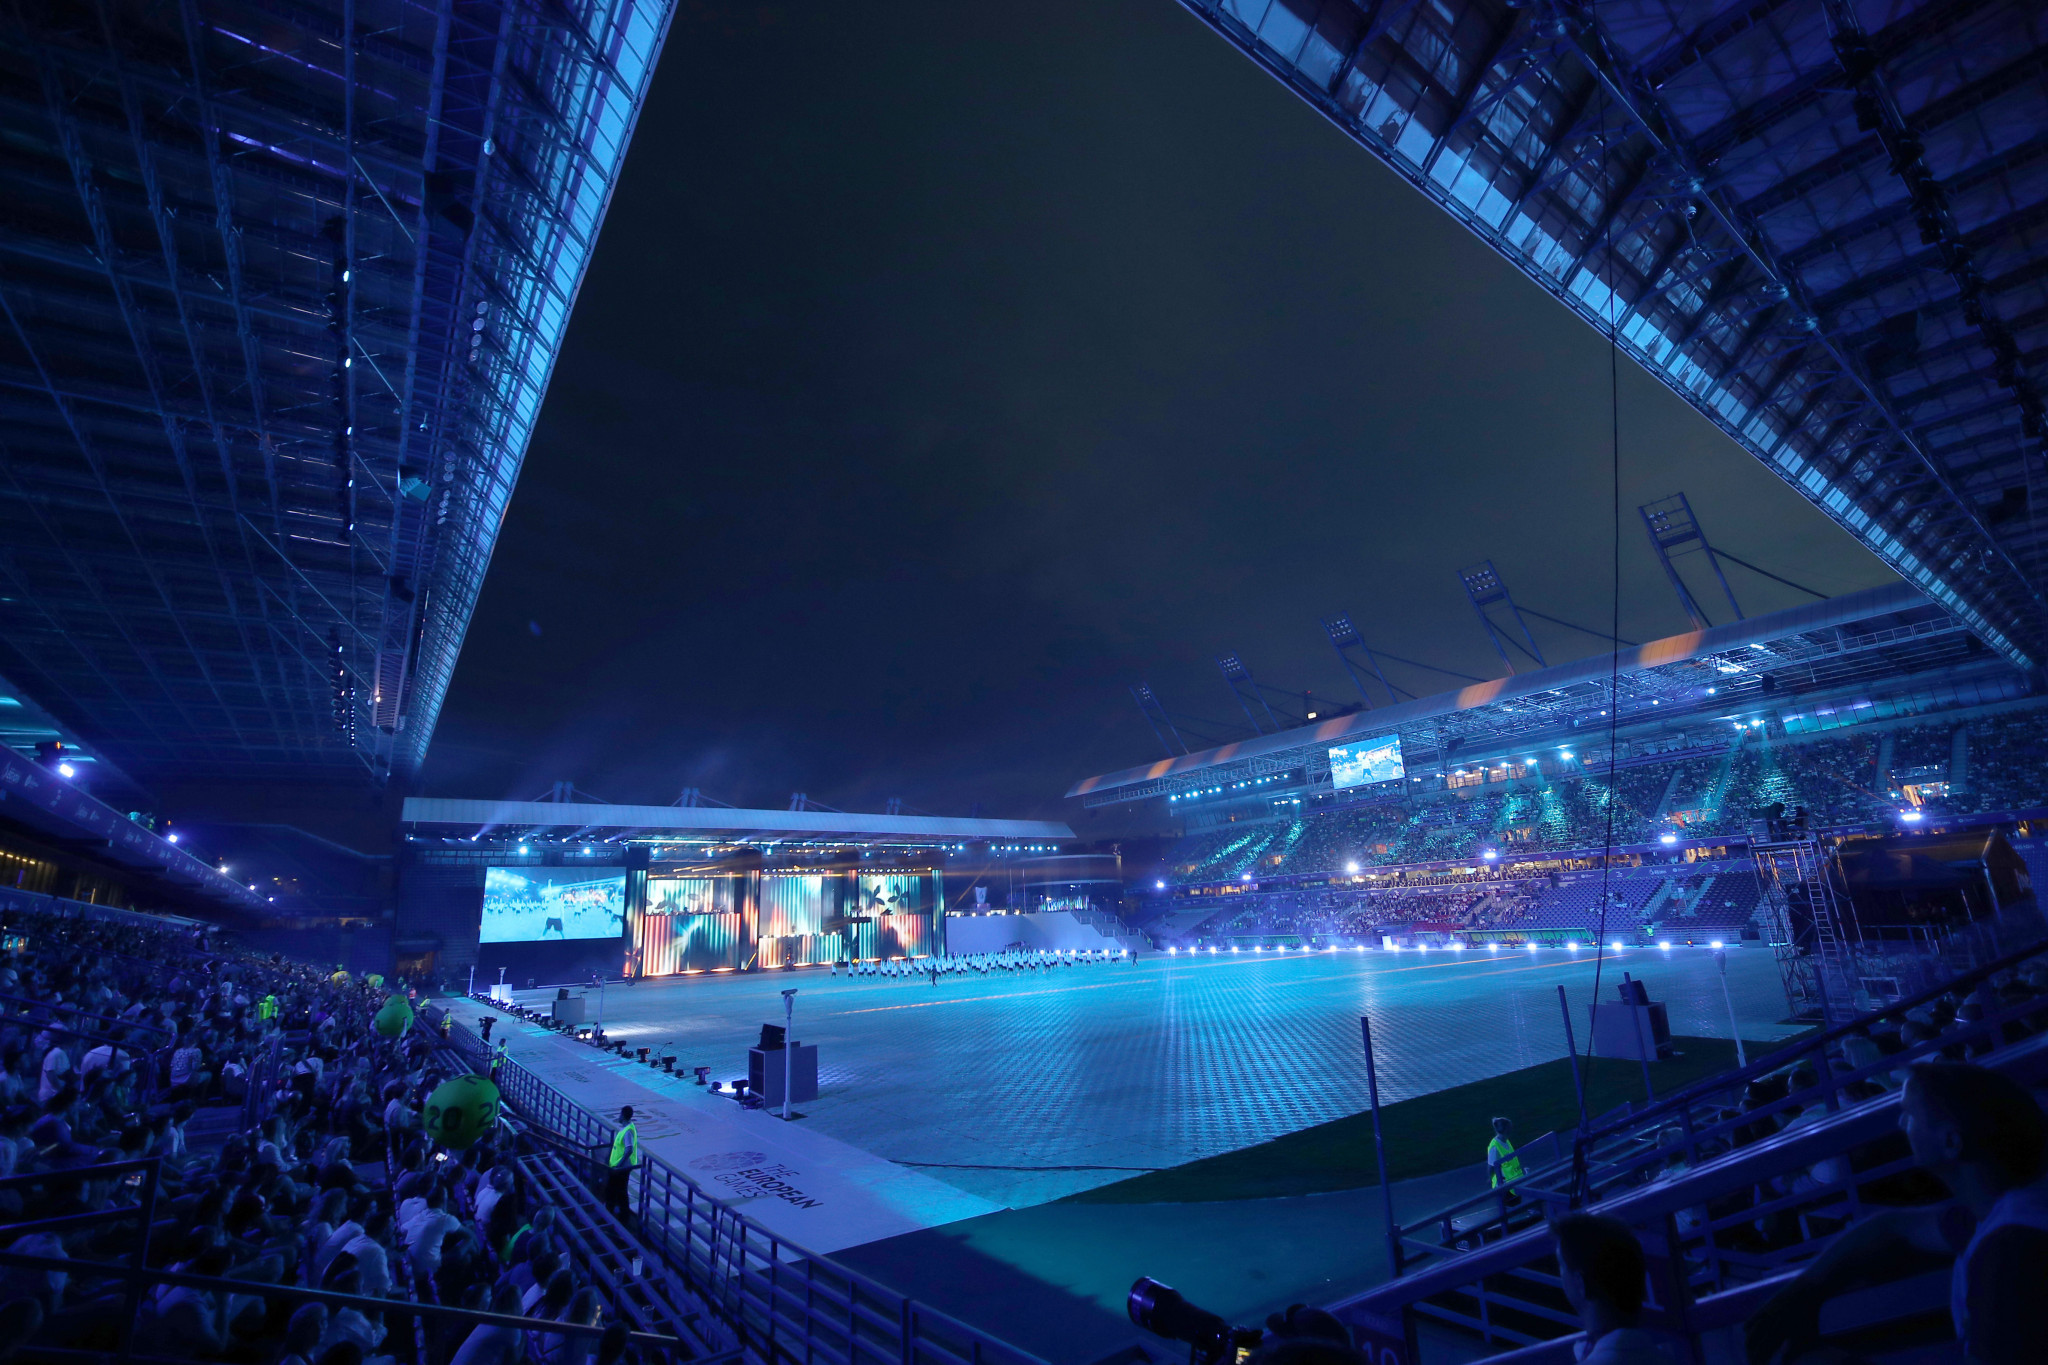 Kraków-Małopolska 2023 European Games: Opening Ceremony